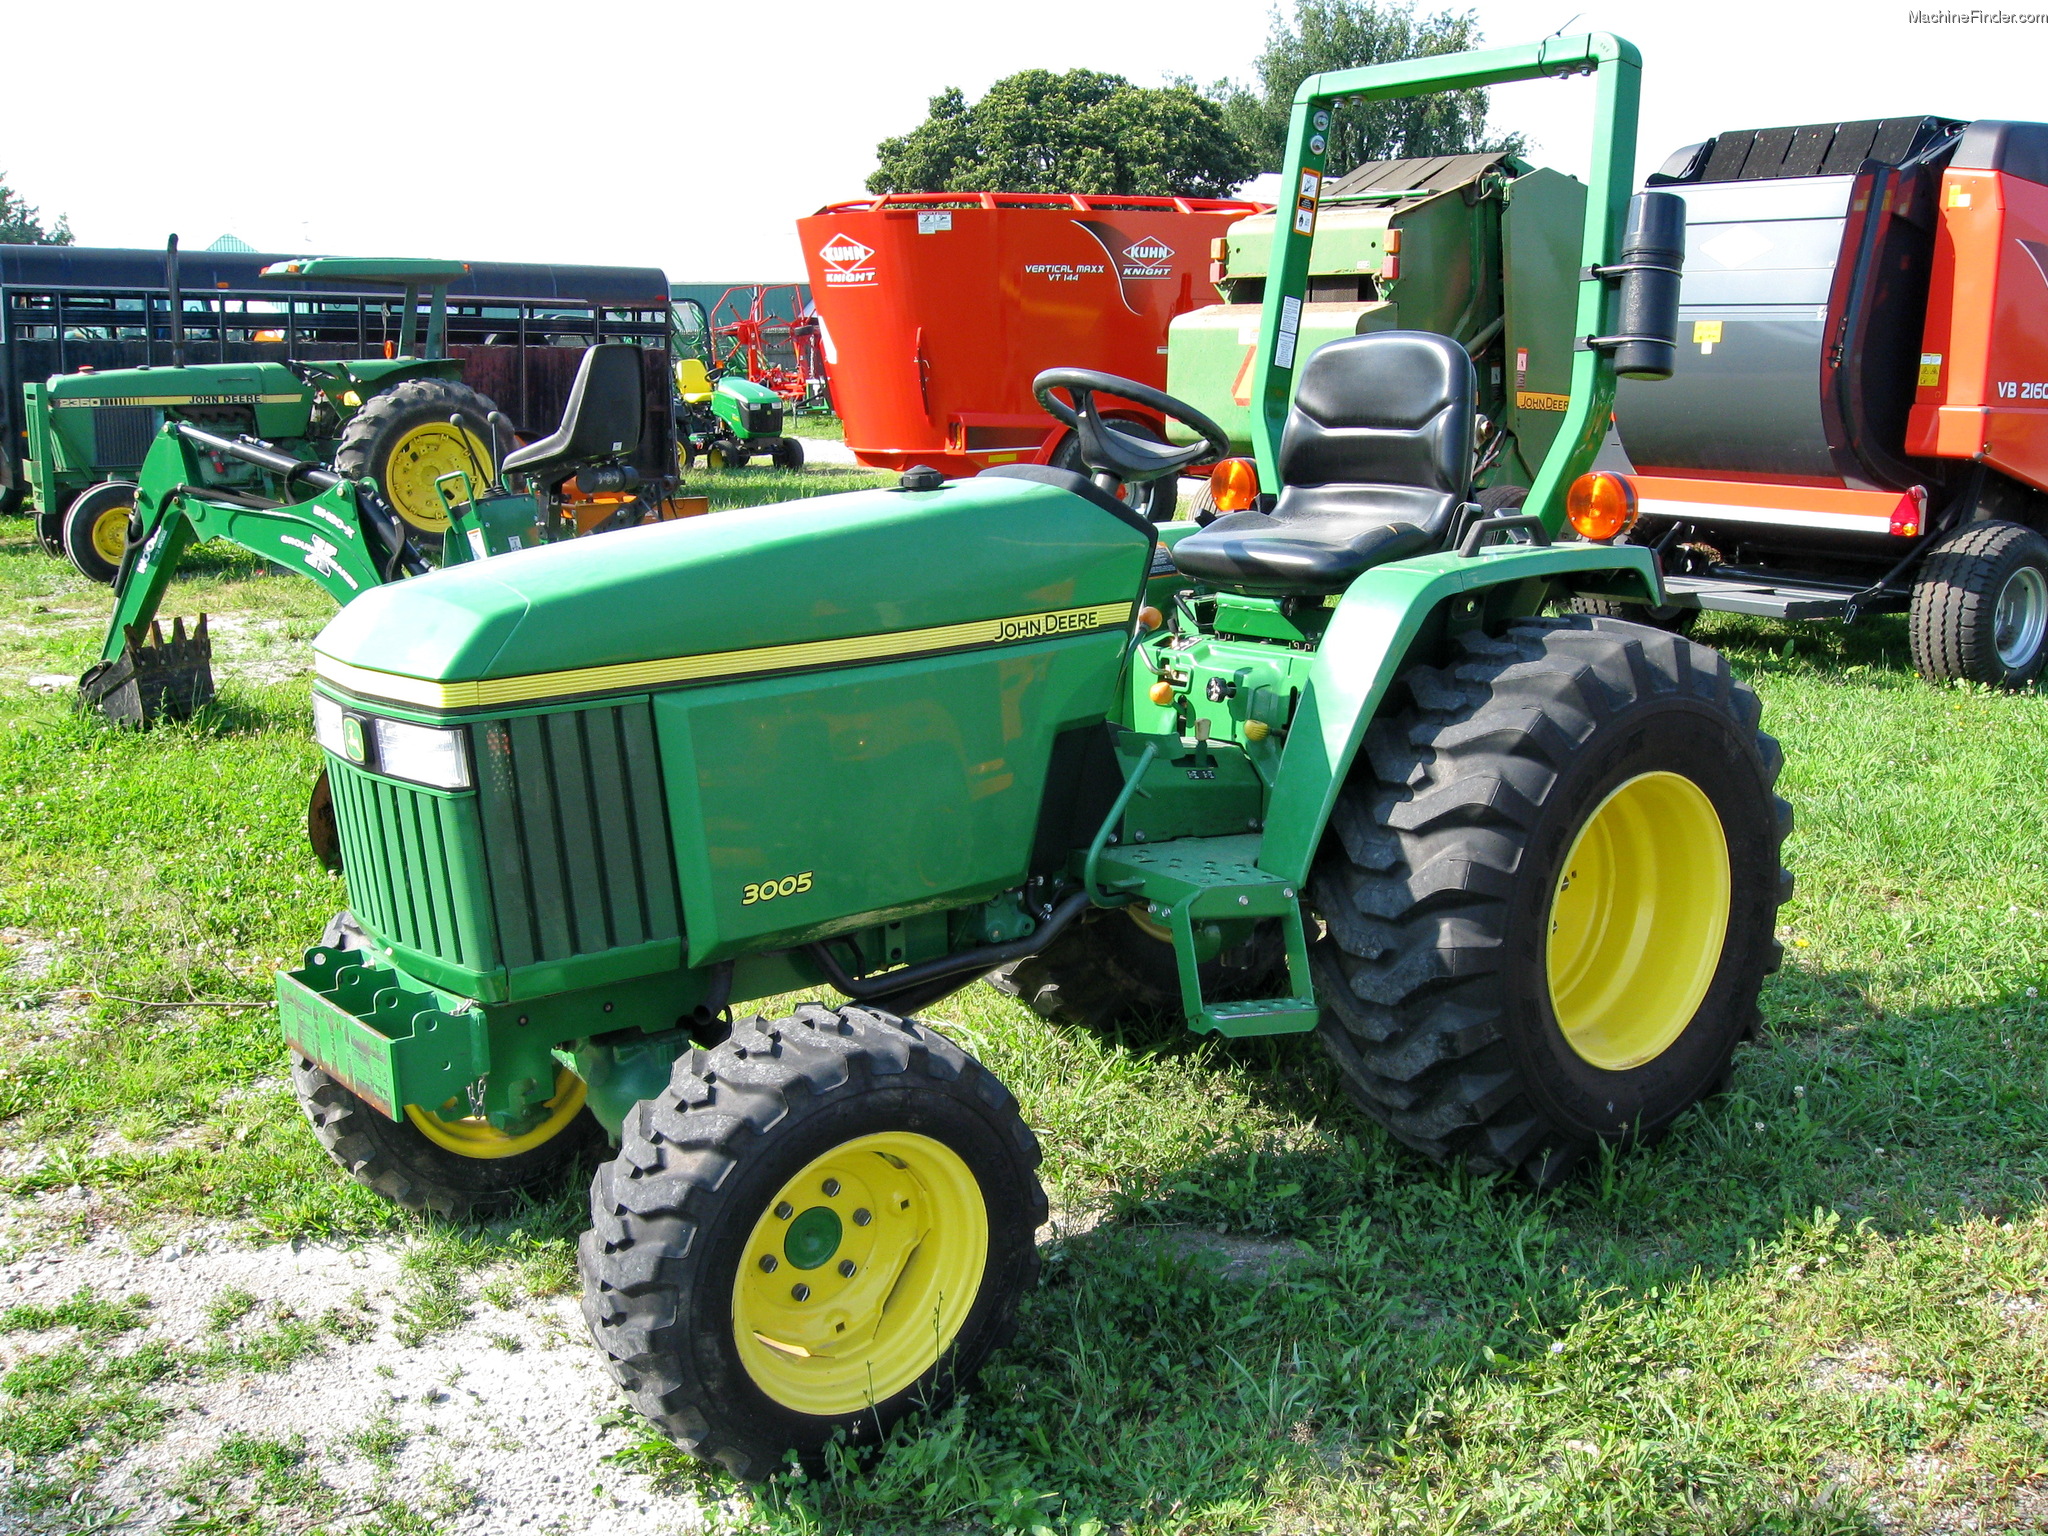 John Deere 3005 Tractors - Compact (1-40hp.) - John Deere ...